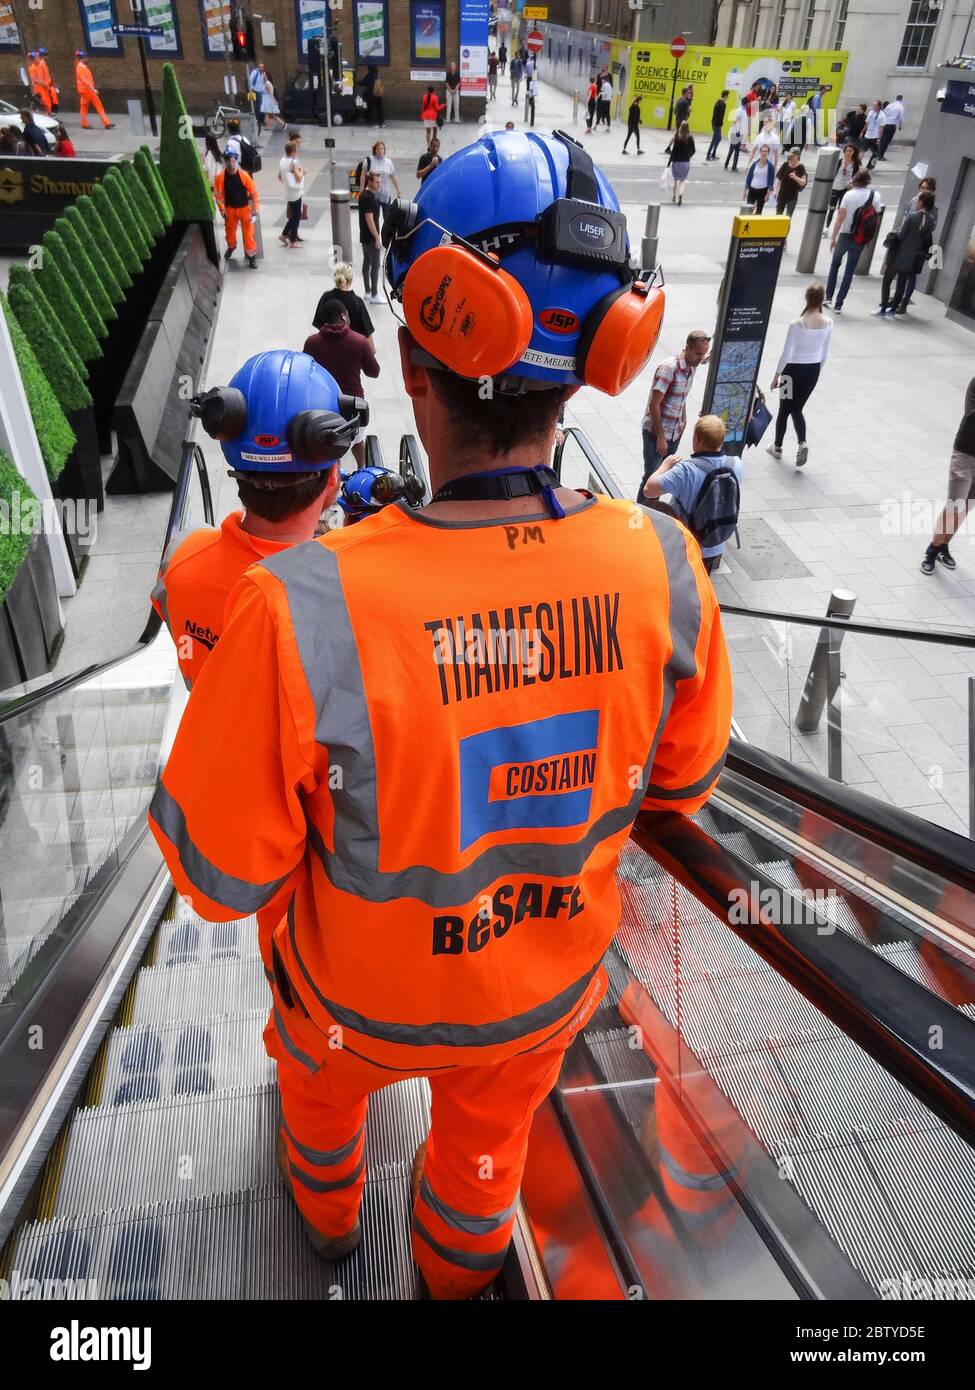 Un ingegnere di Thameslink Costain che scende da una scala mobile accanto alla stazione di London Bridge e allo Shard, Londra, Regno Unito Foto Stock